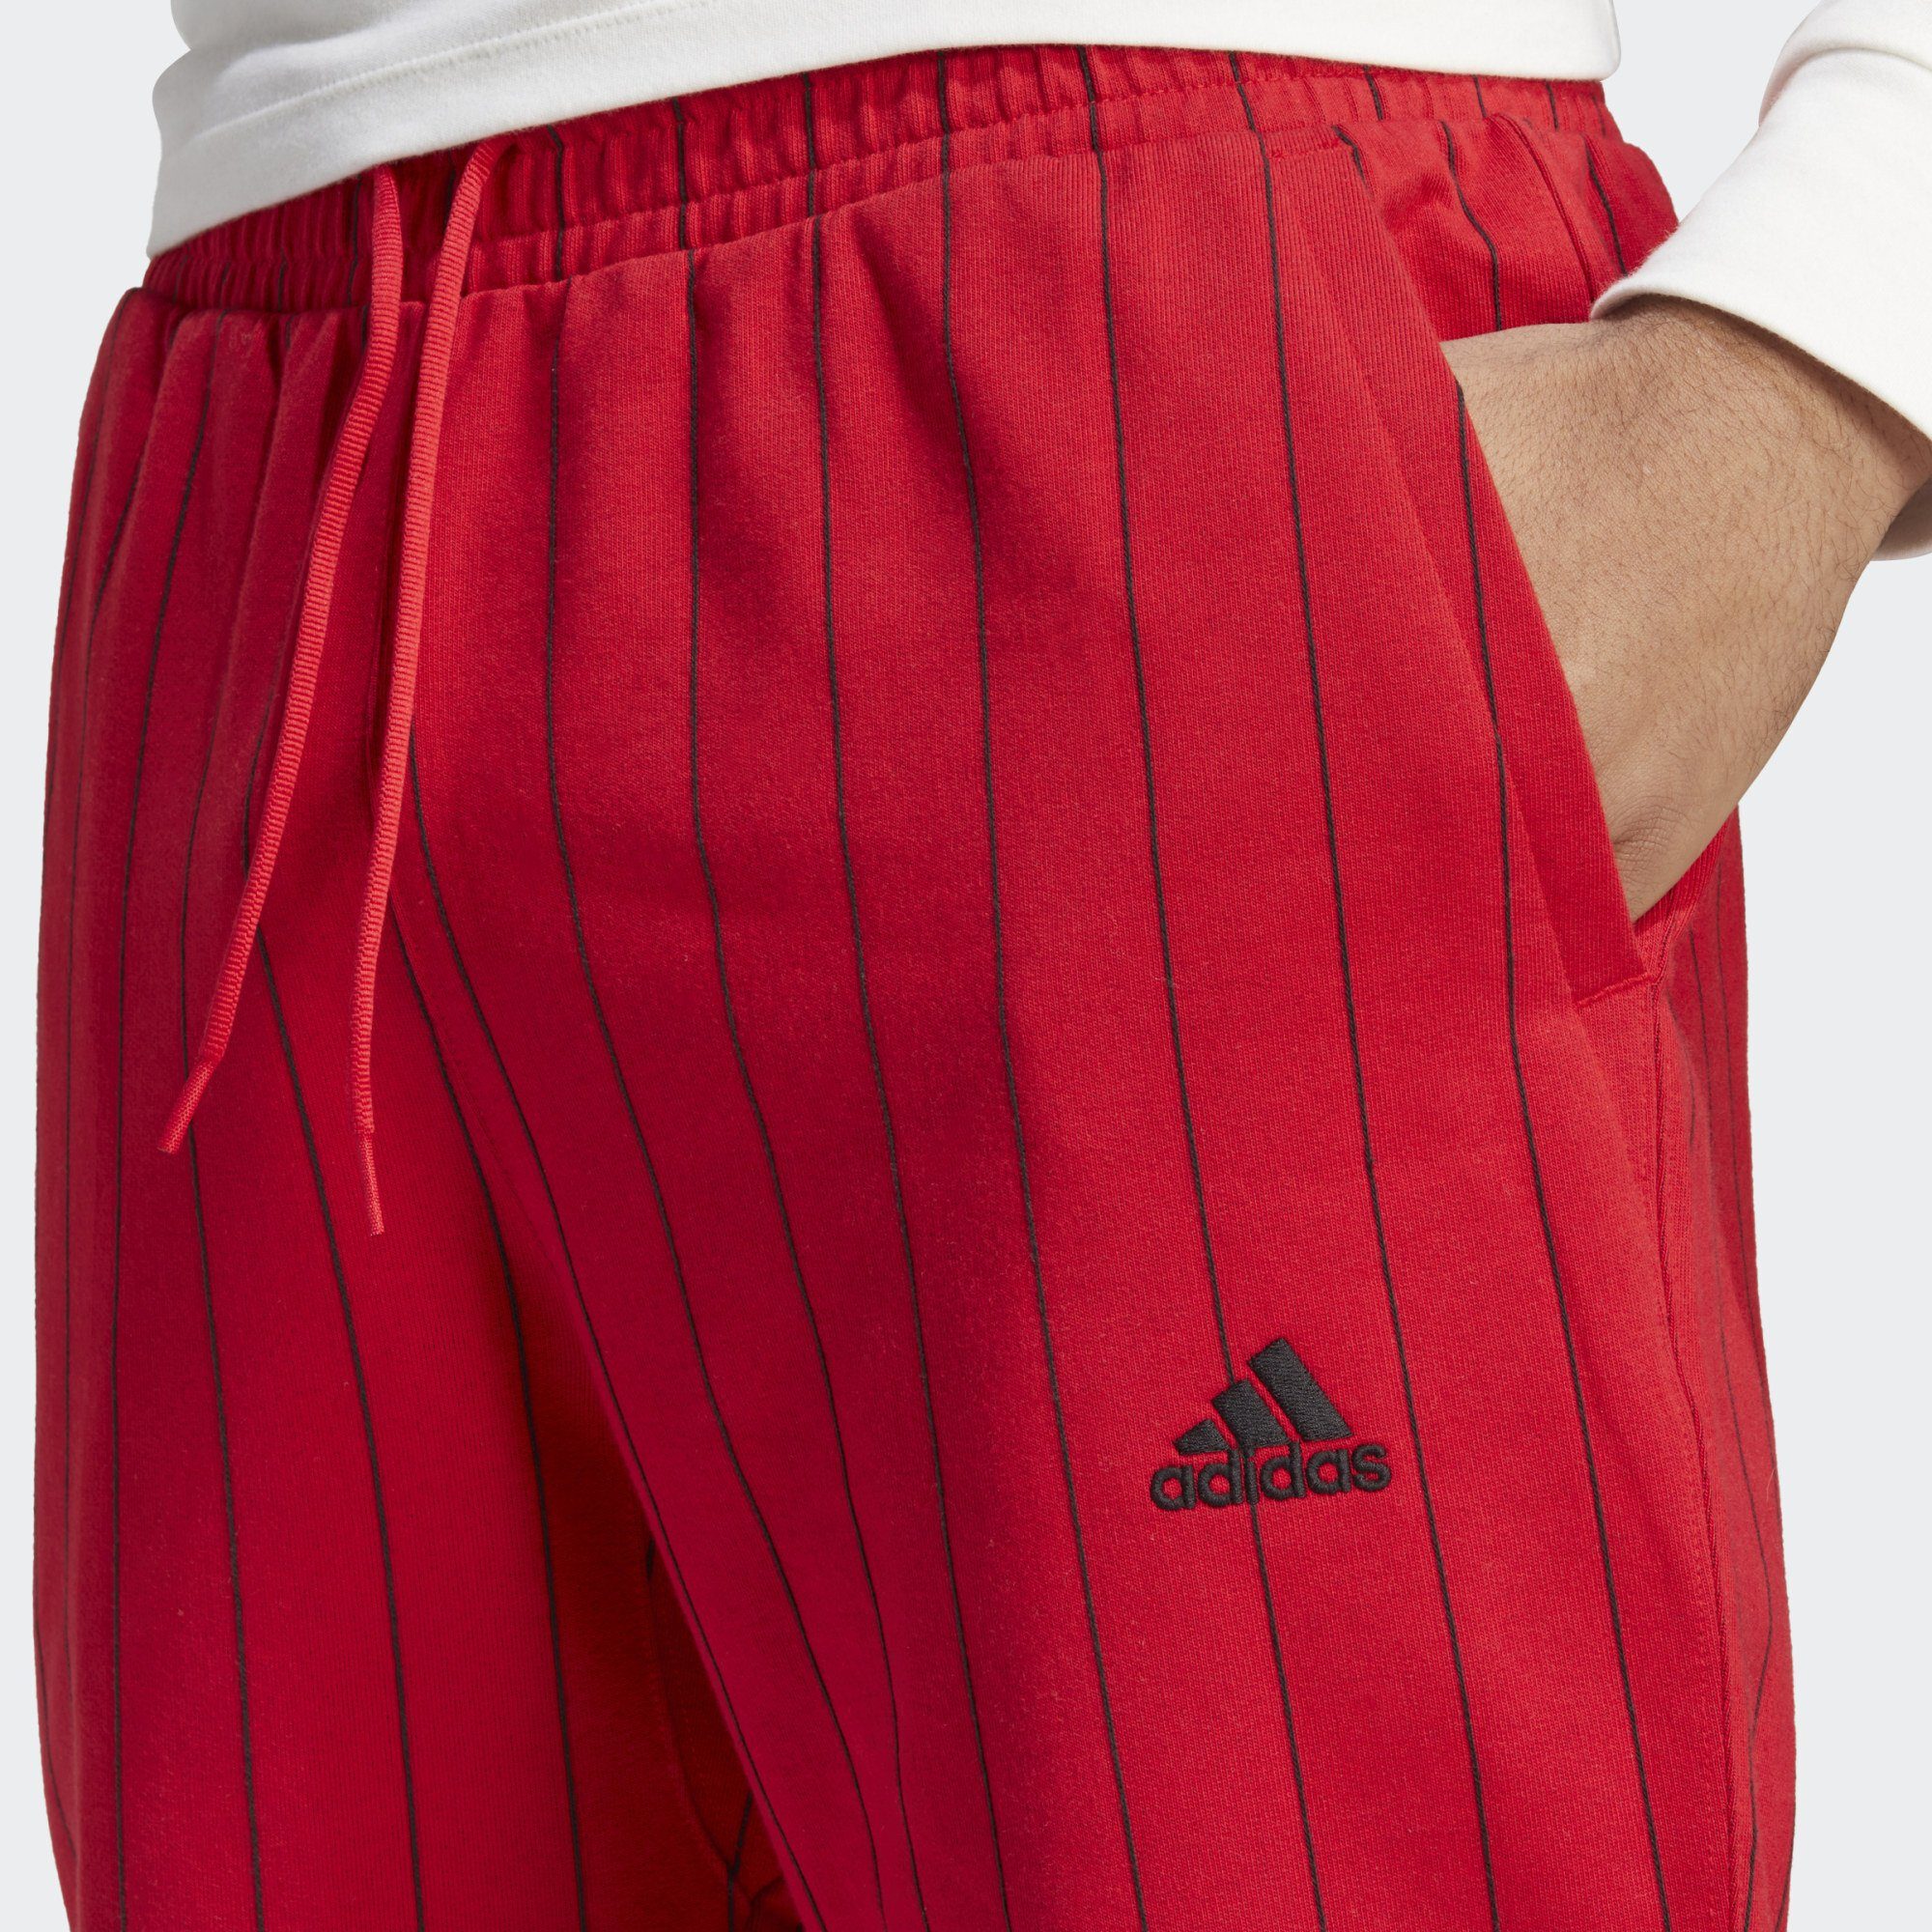 PINSTRIPE Jogginghose adidas FLEECE Better Scarlet Sportswear HOSE